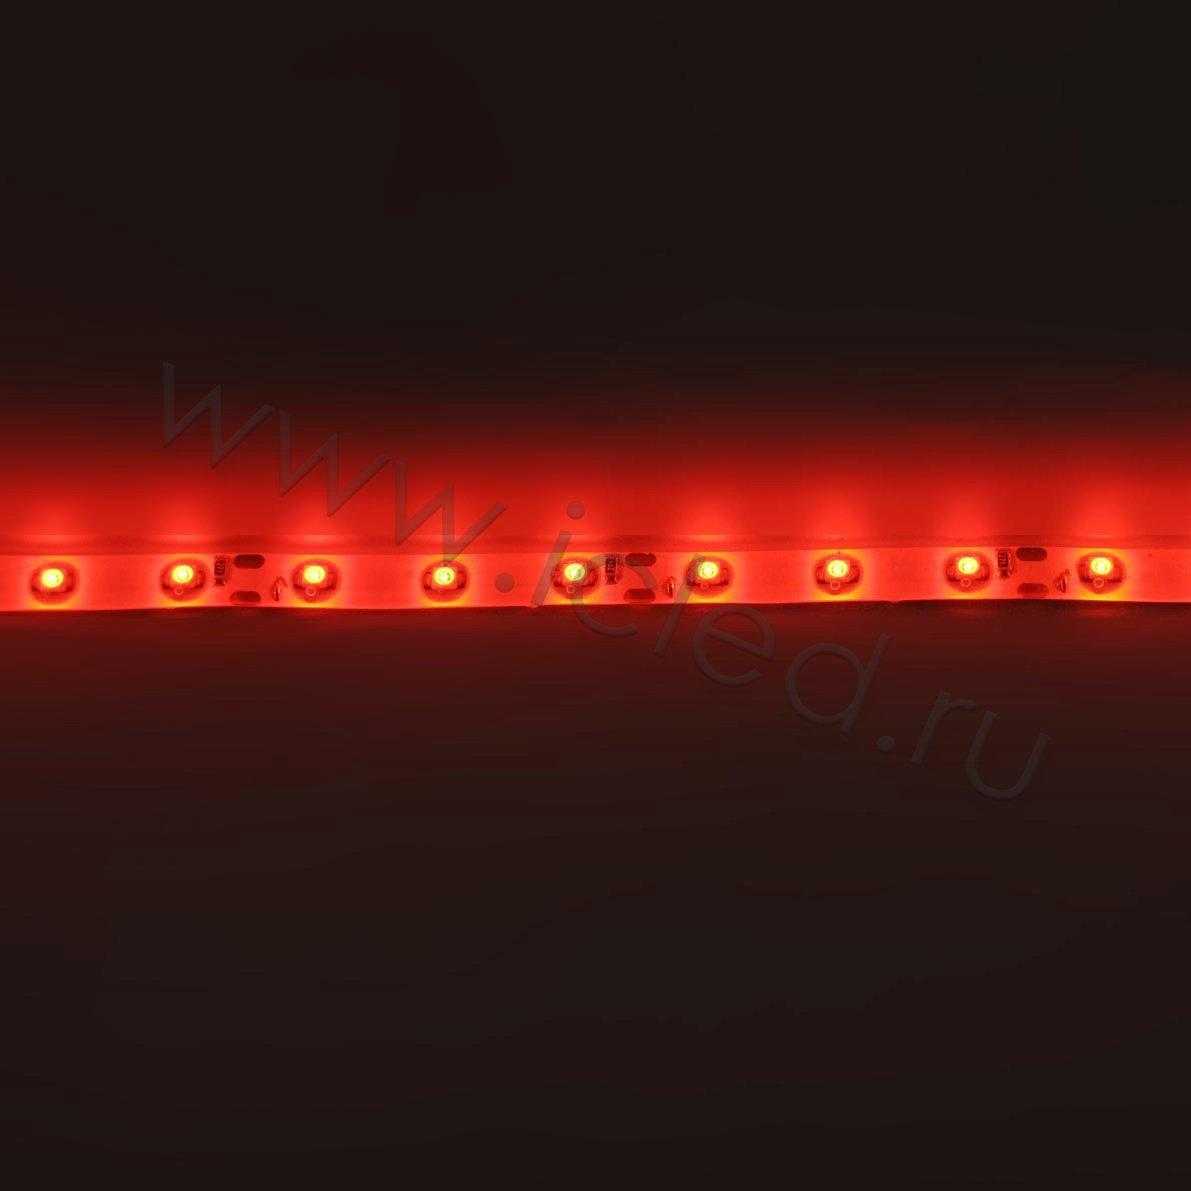 Влагозащищенные светодиодные ленты Светодиодная лента Standart class, 3528, 60led/m, Red, 12V, IP65 Icled